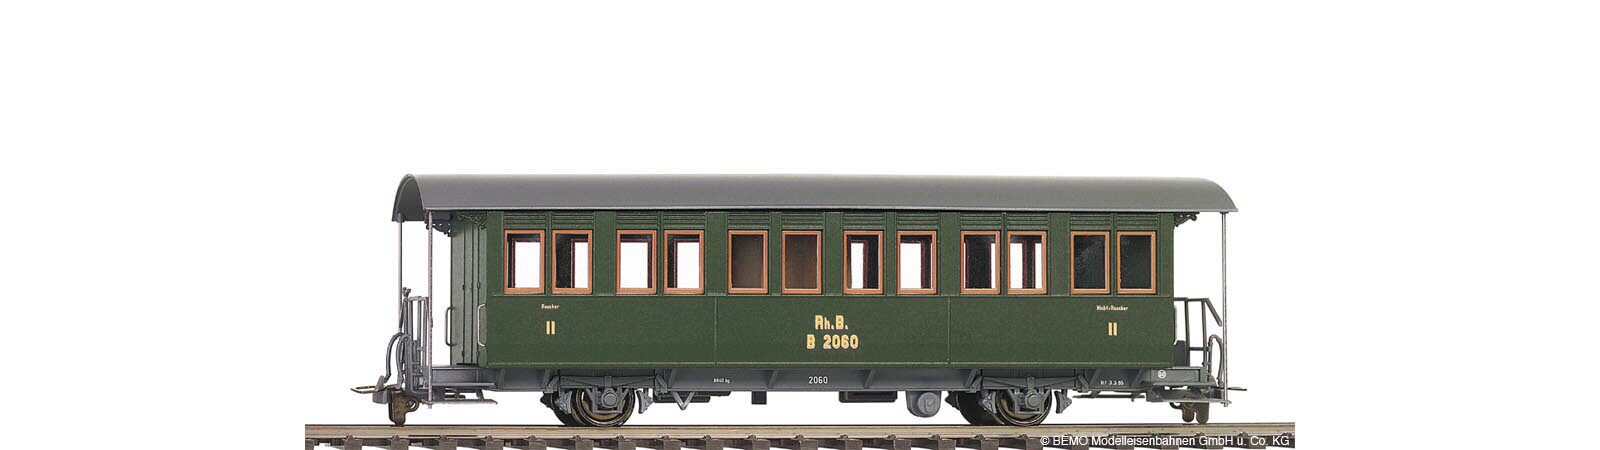 Bemo 3230140 RhB Personenwagen  B 2060 historischer Dampfzug